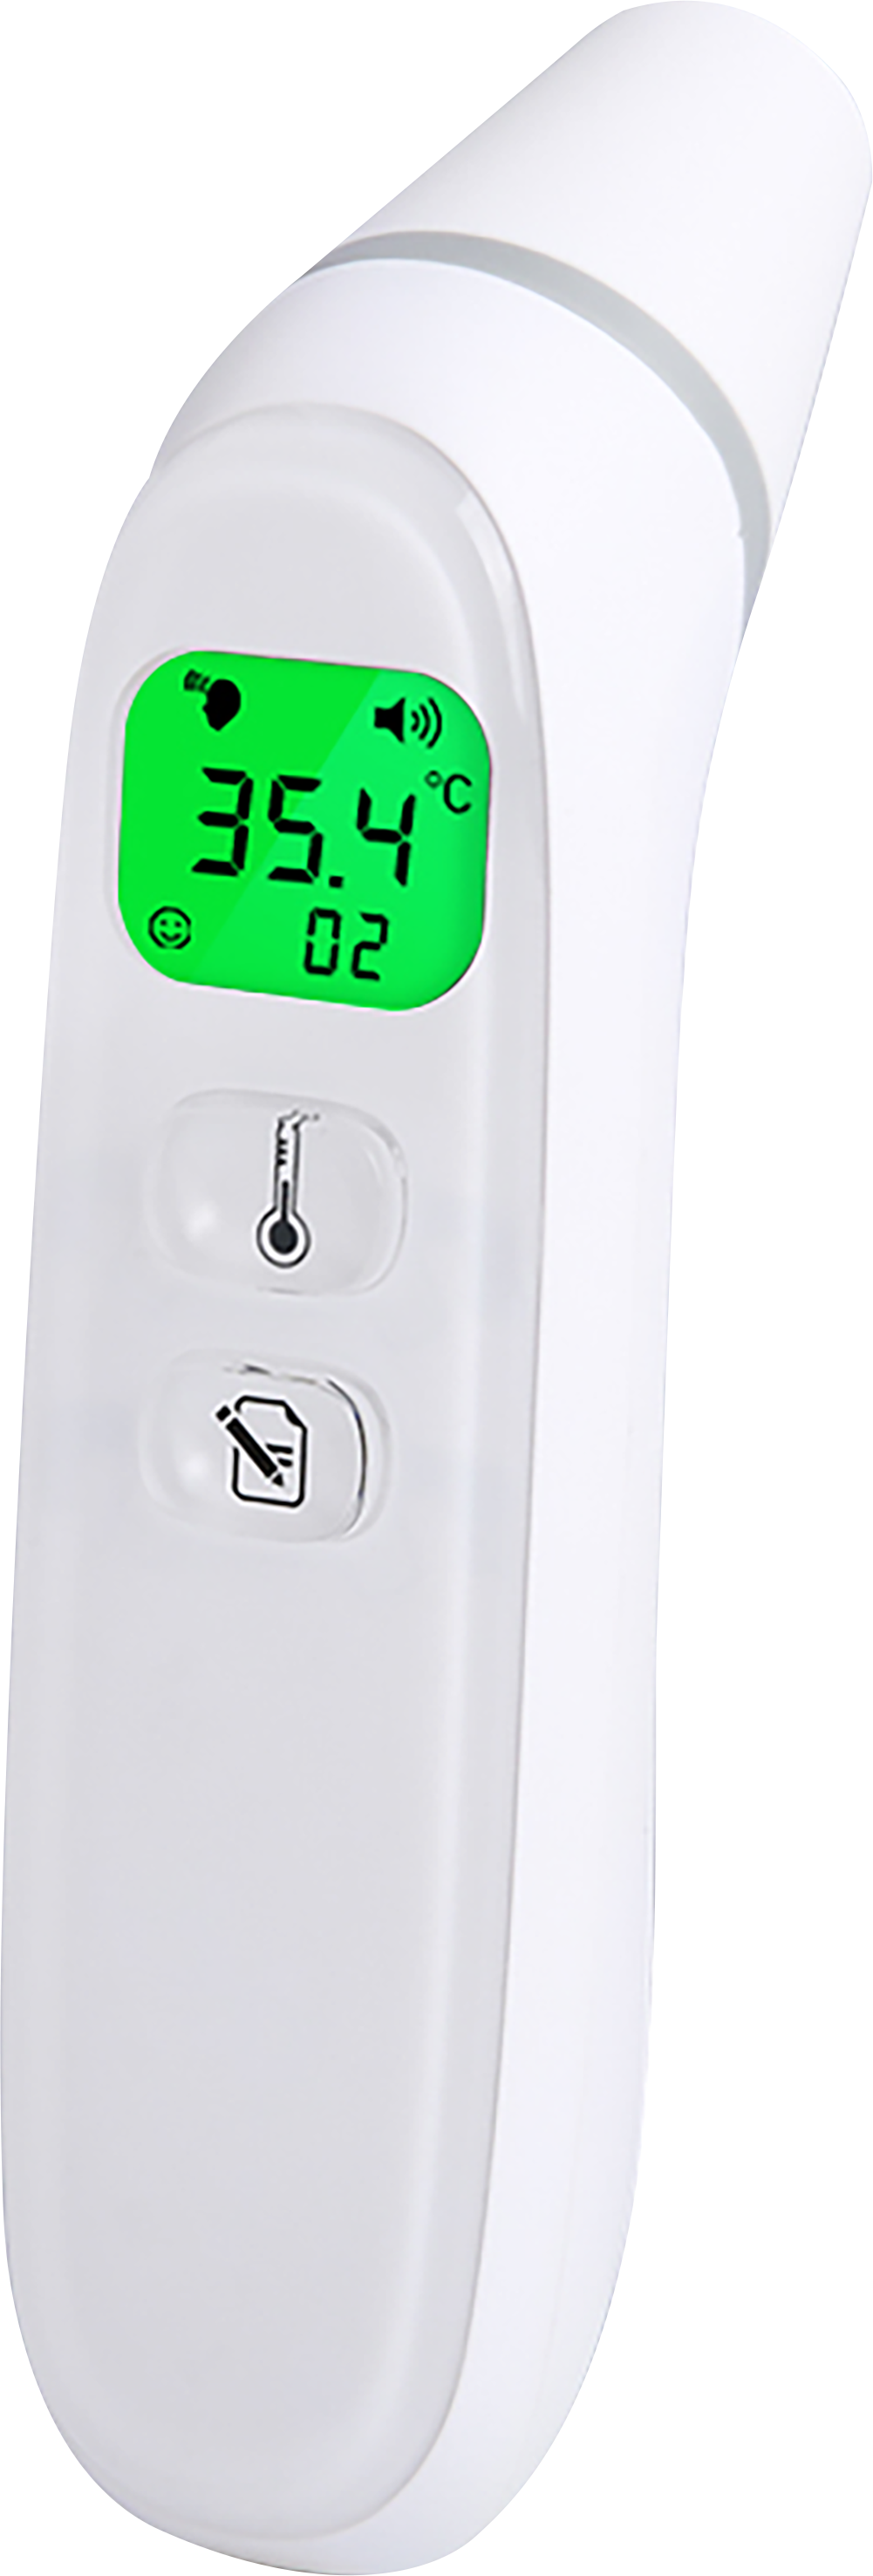 KF-HW-004 Termómetros infrarrojos domésticos termómetros de termómetro infrarrojos y termómetro de oído